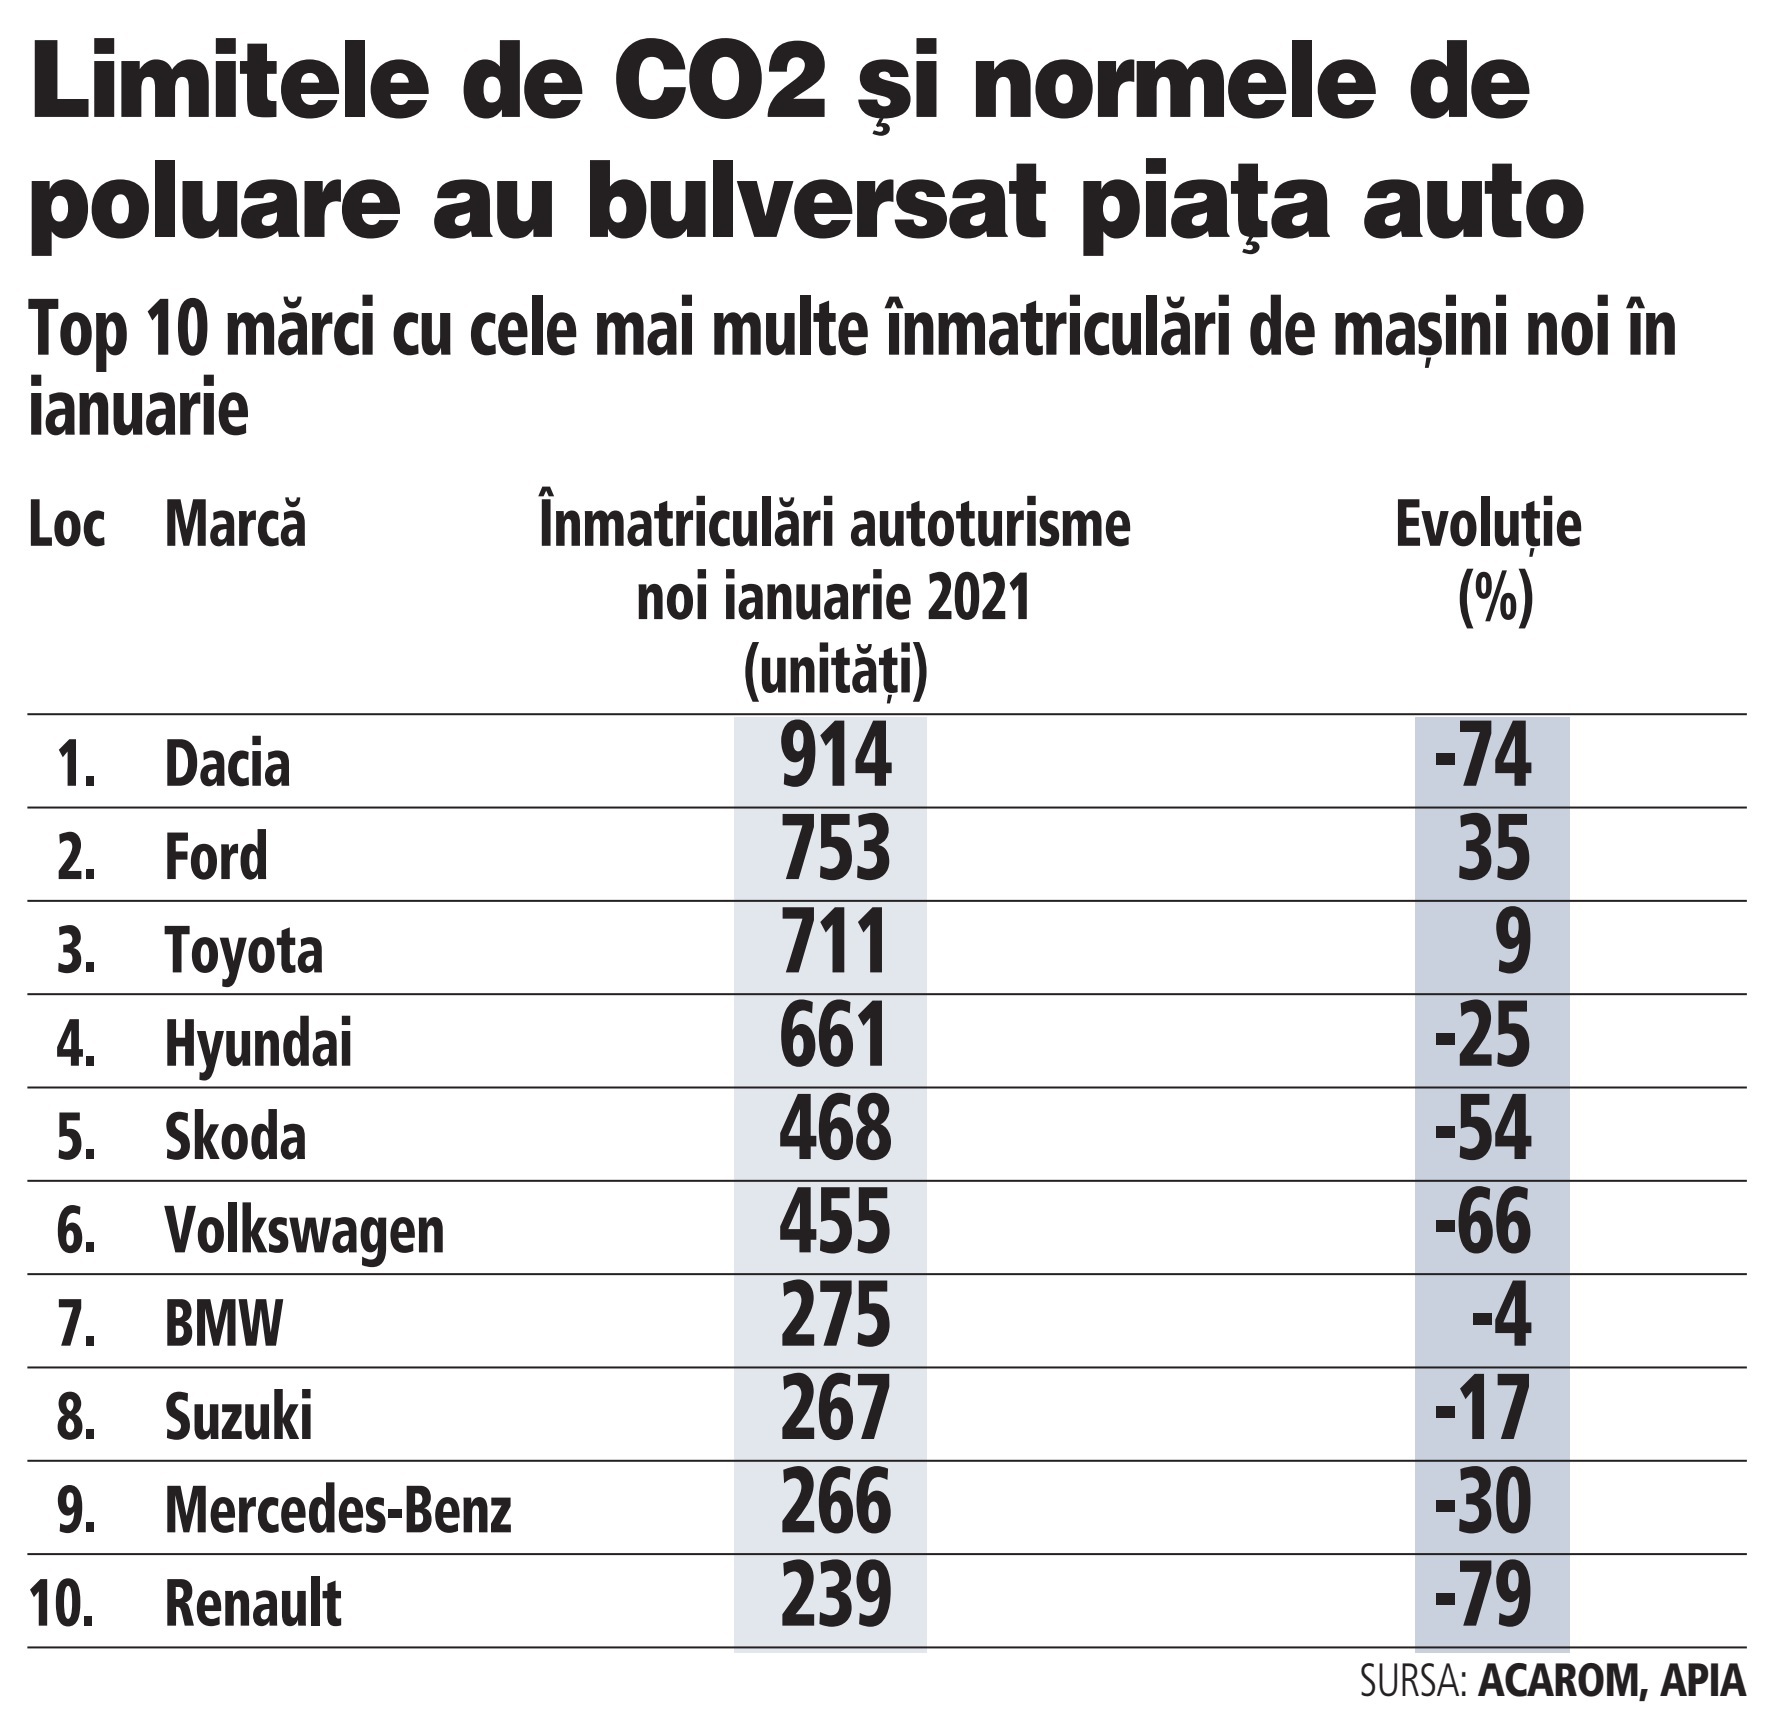 Noile norme de poluare Euro 6 rad jumătate din piaţa auto din ianuarie 2021: Dacia a scăzut cu 74%, Hyundai cu 25%, Skoda cu 54% şi VW cu 66%. Ford a crescut cu 35%, iar Toyota cu 9%